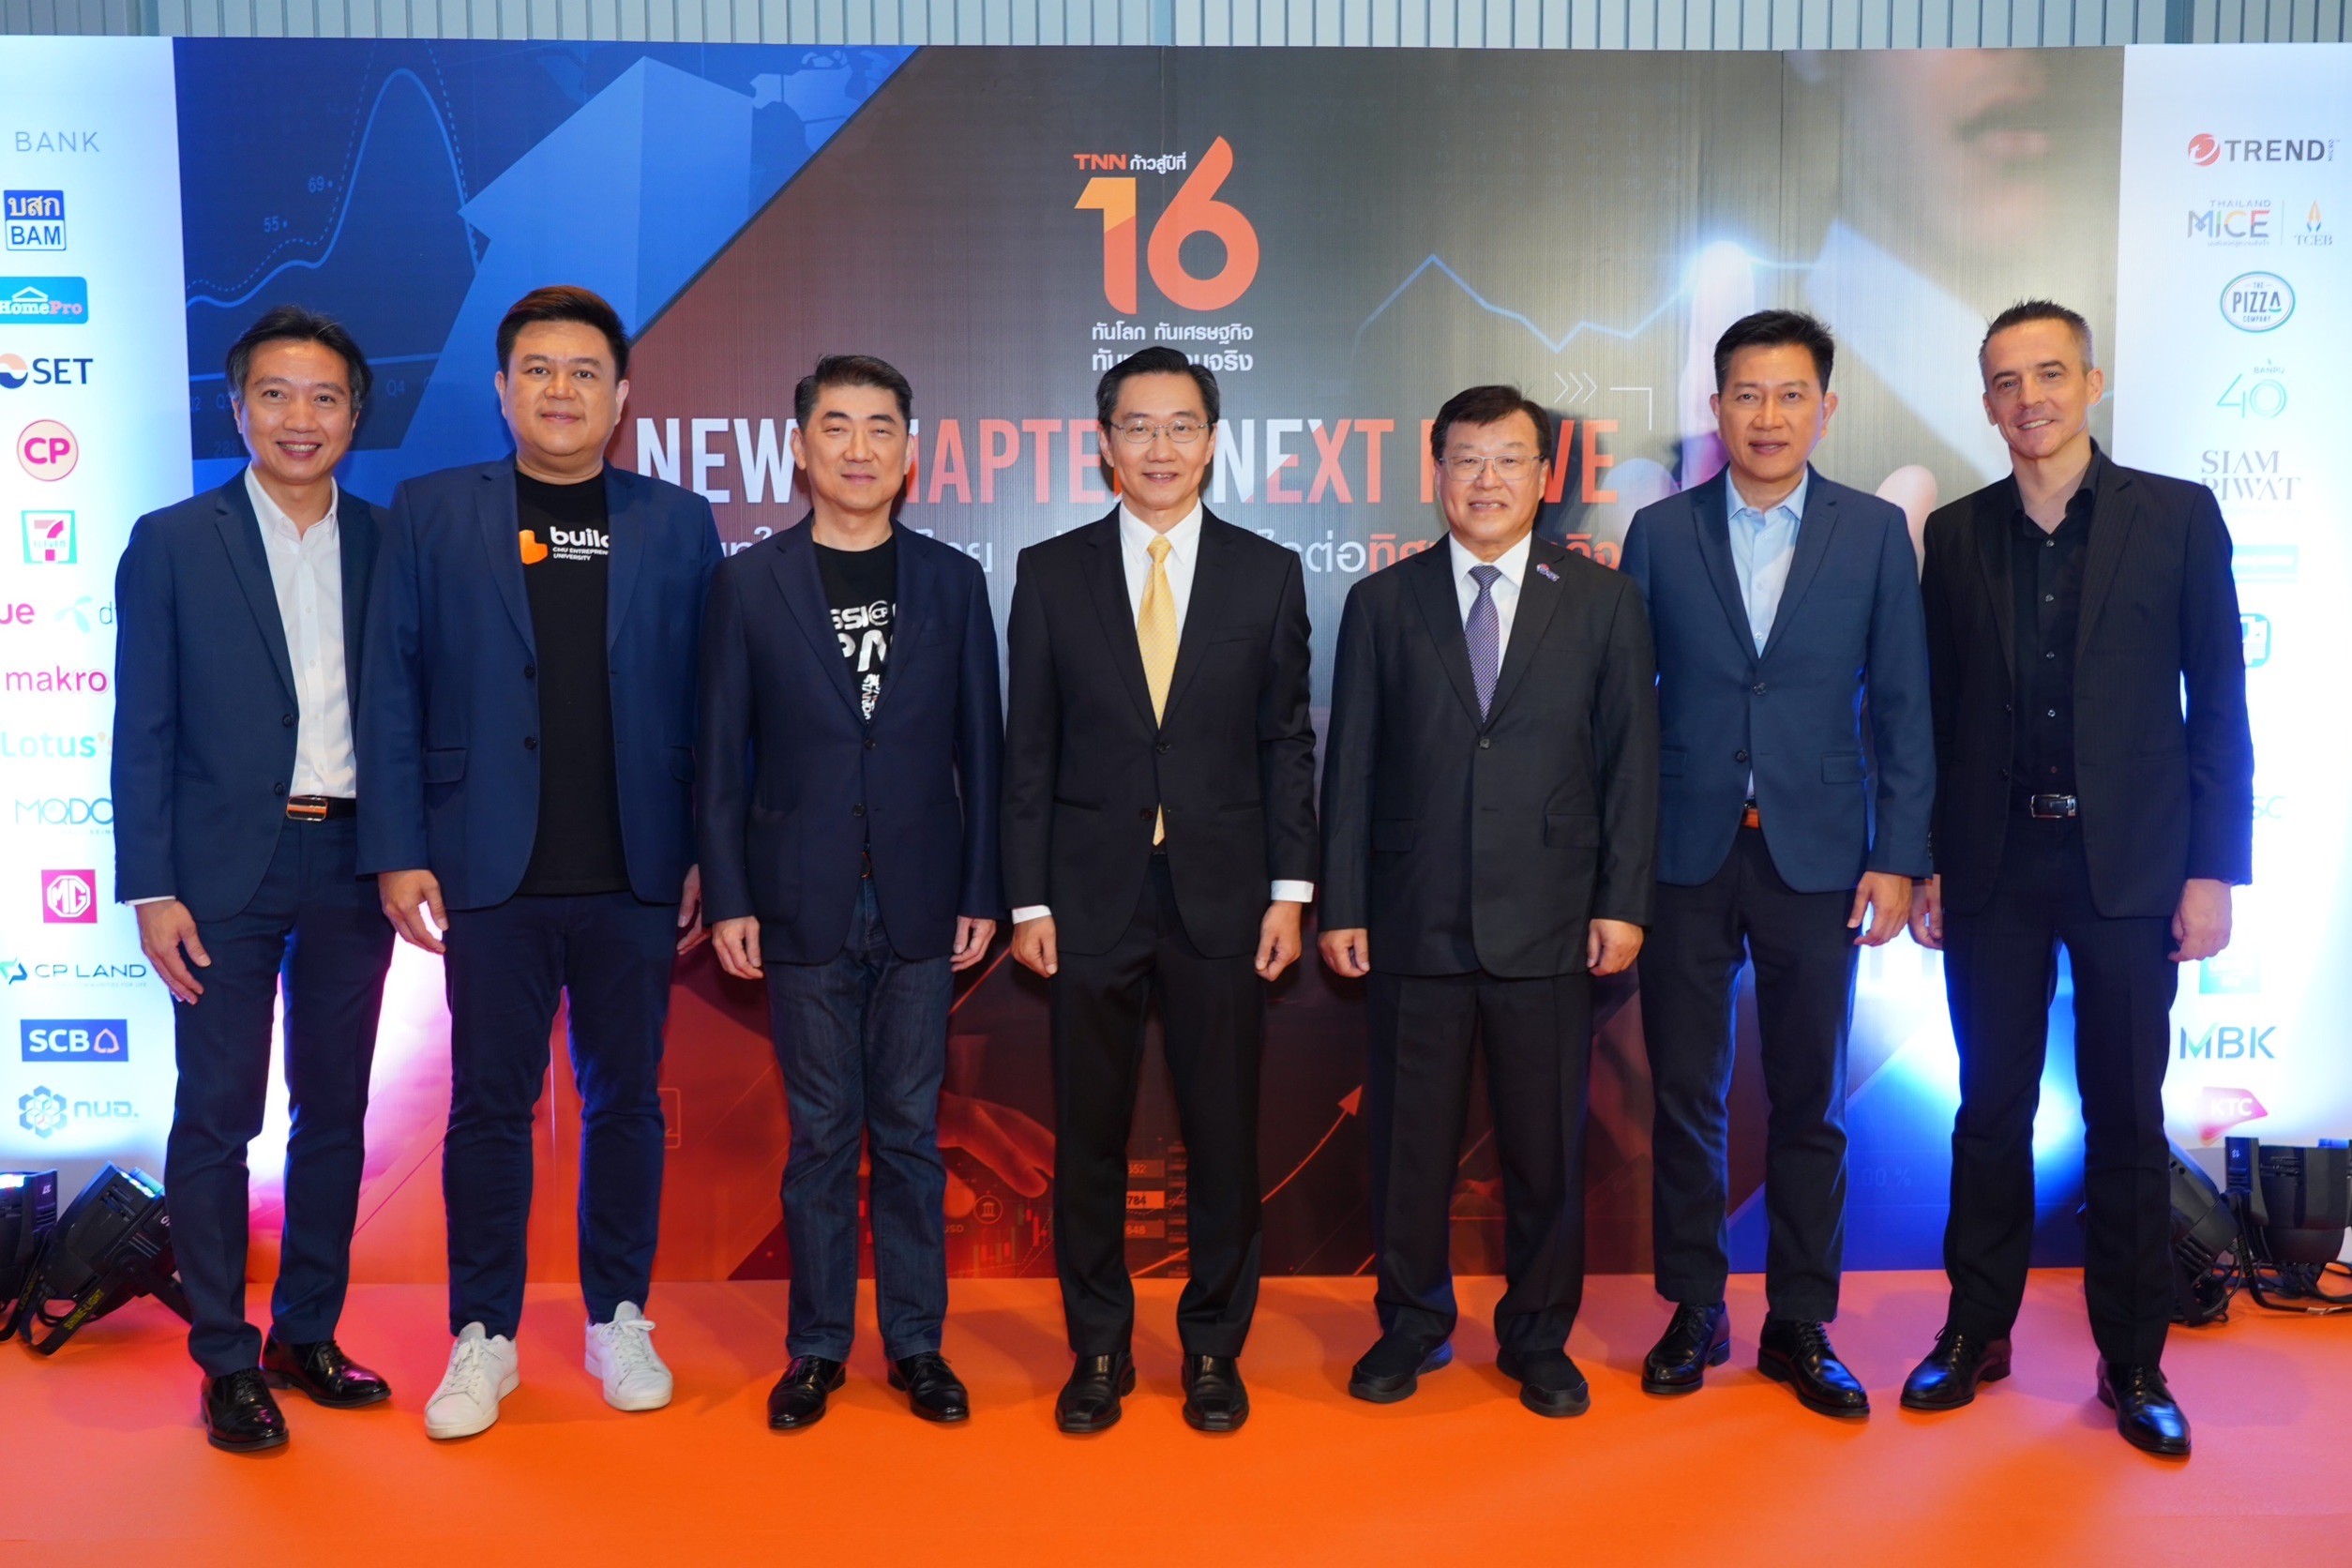 TNN ช่อง 16 เผยวิสัยทัศน์ บริบทใหม่ของไทย ส่งผลอย่างไรต่อทิศทางธุรกิจ New Chapter, Next Move ฉลองสถานีข่าวคุณภาพอันดับหนึ่งของคนไทย ก้าวสู่ปีที่ 16 